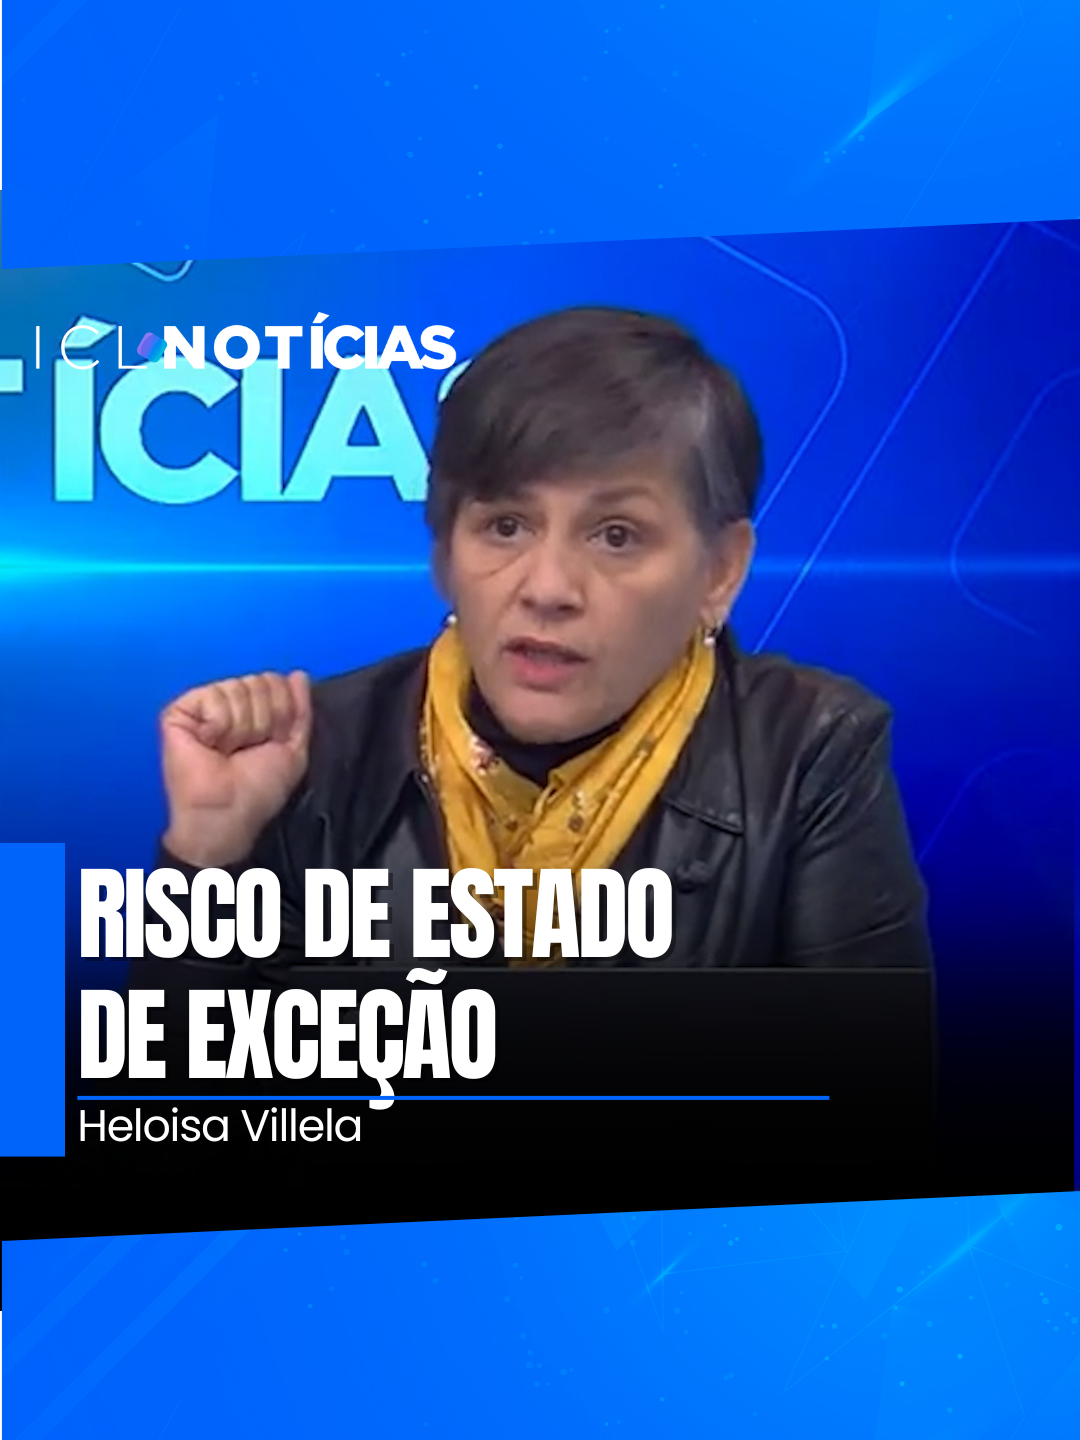 ‘Abin paralela’ mostra o risco que o país correu sob Bolsonaro. Veja o comentário de Heloísa Villela Veja mais no Portal ICL Notícias: https://www.iclnoticias.com.br